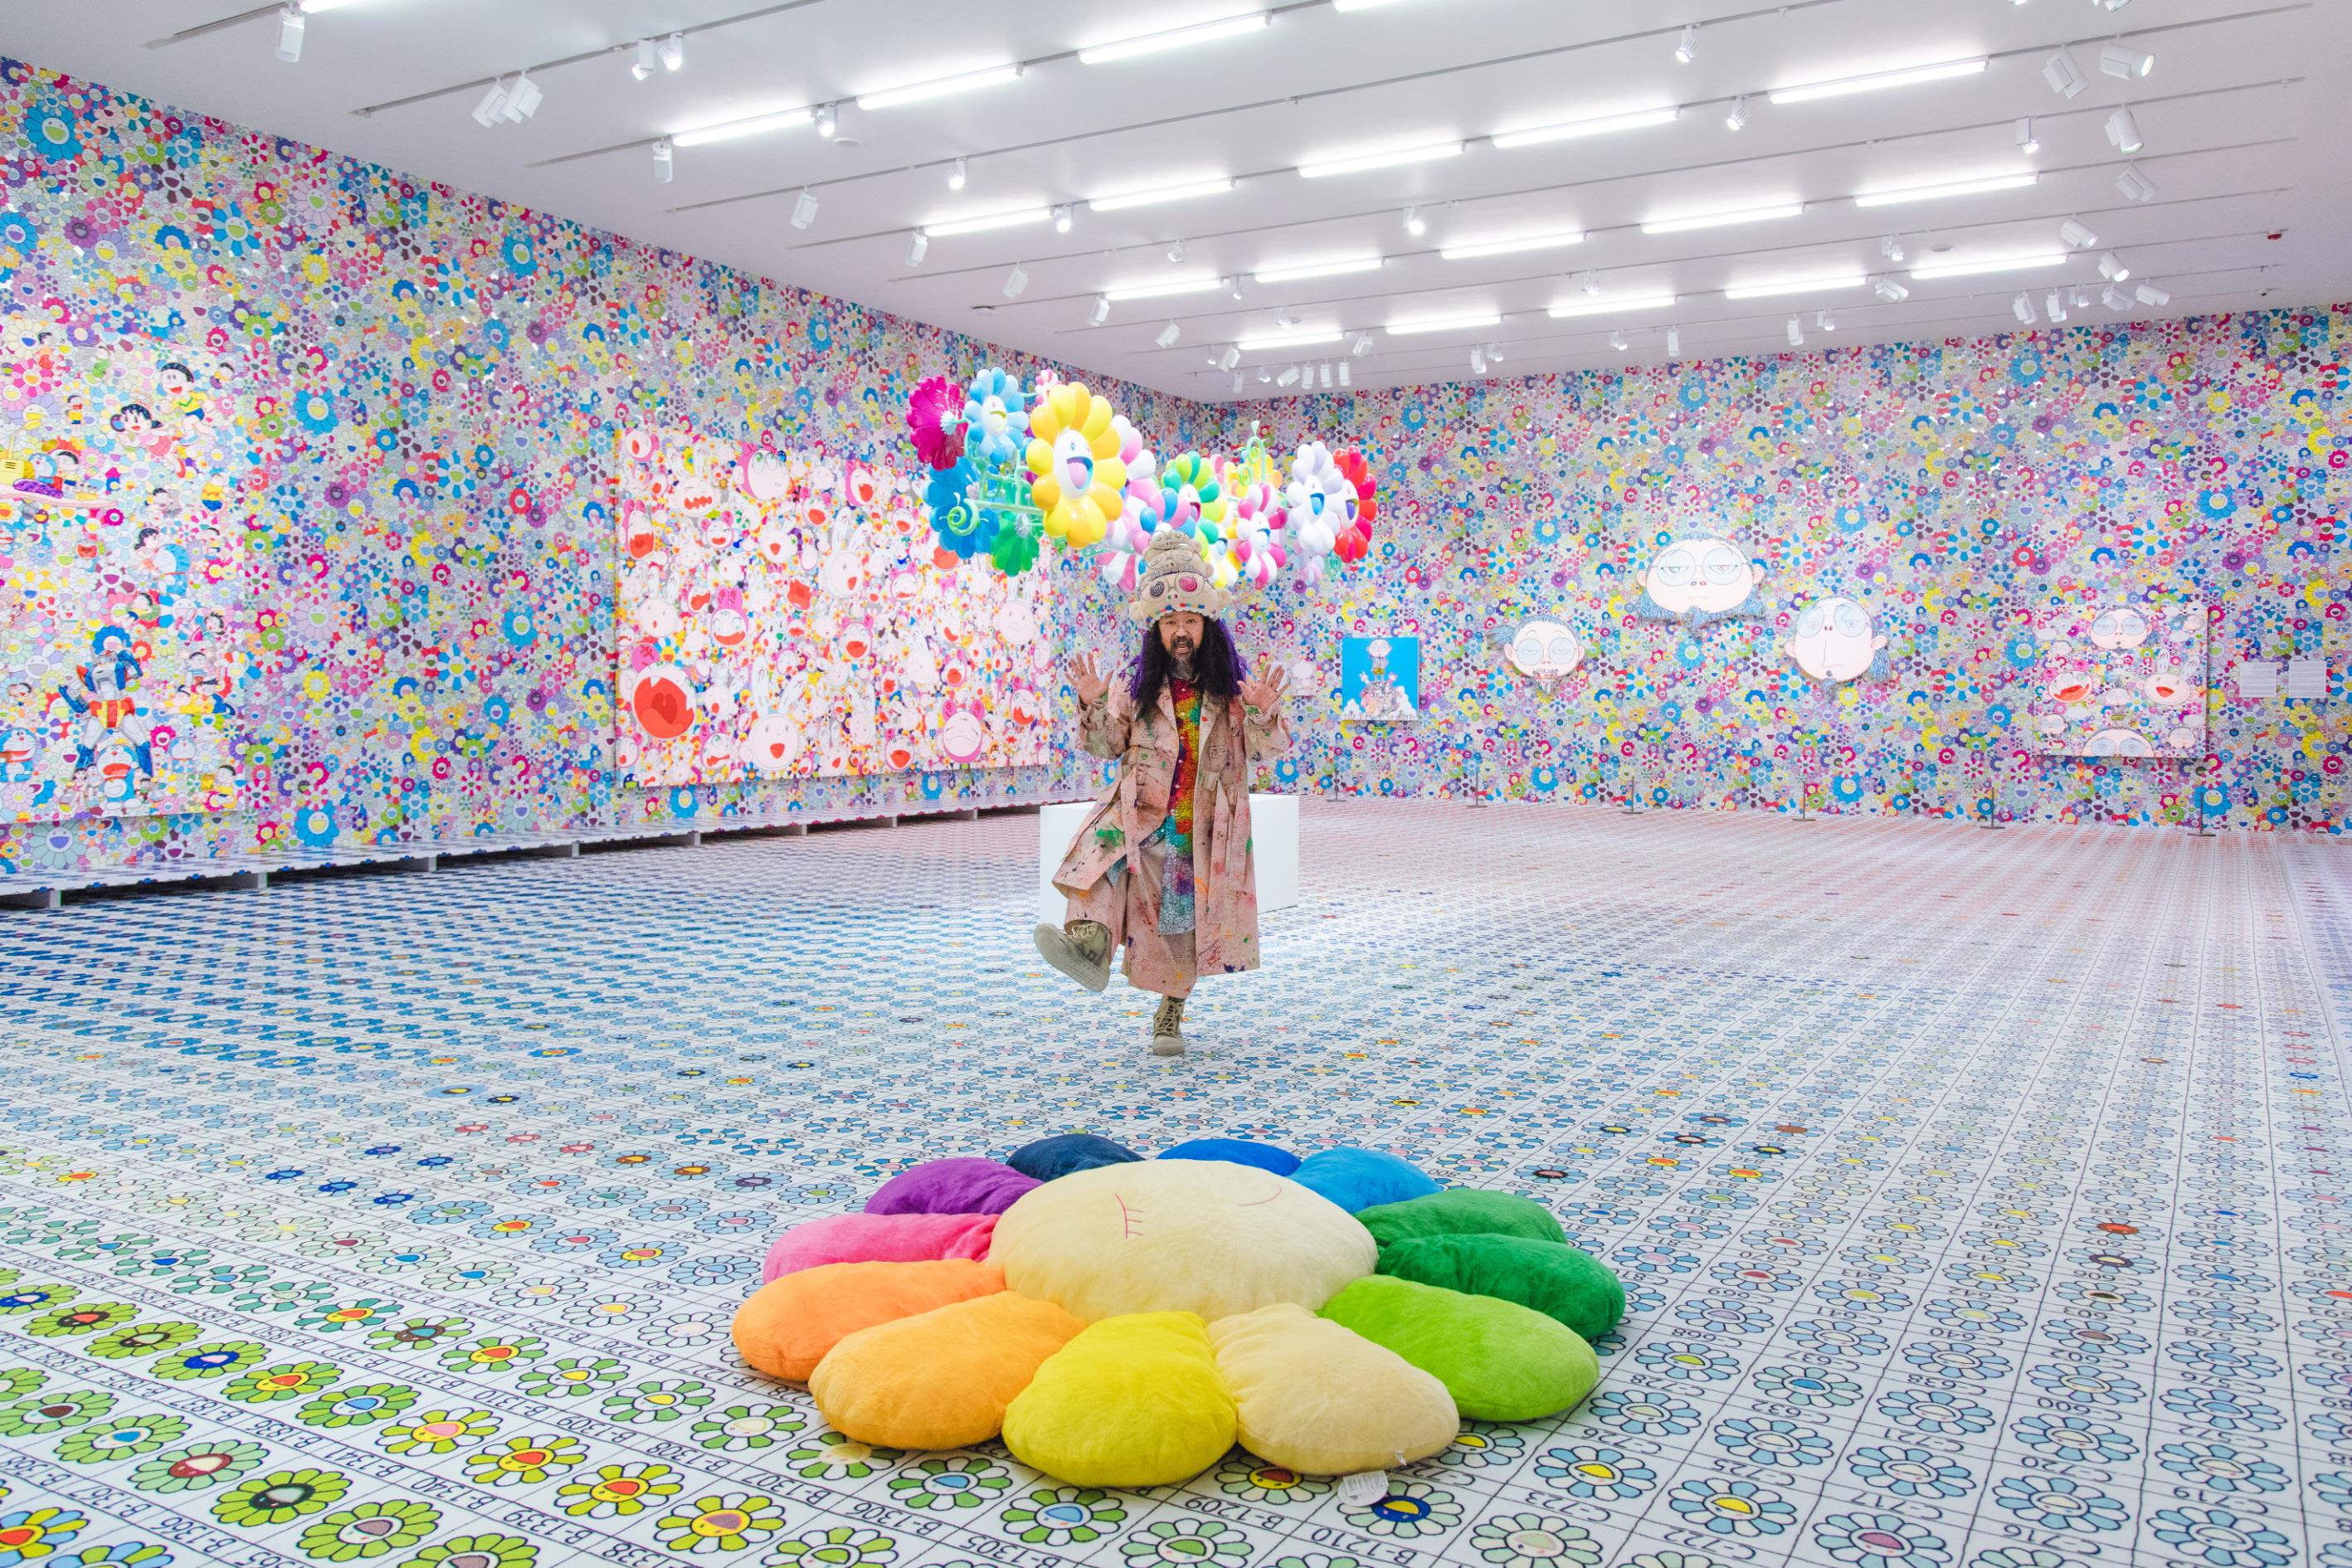 Is Artist Takashi Murakami Exalting or Critiquing Consumerism